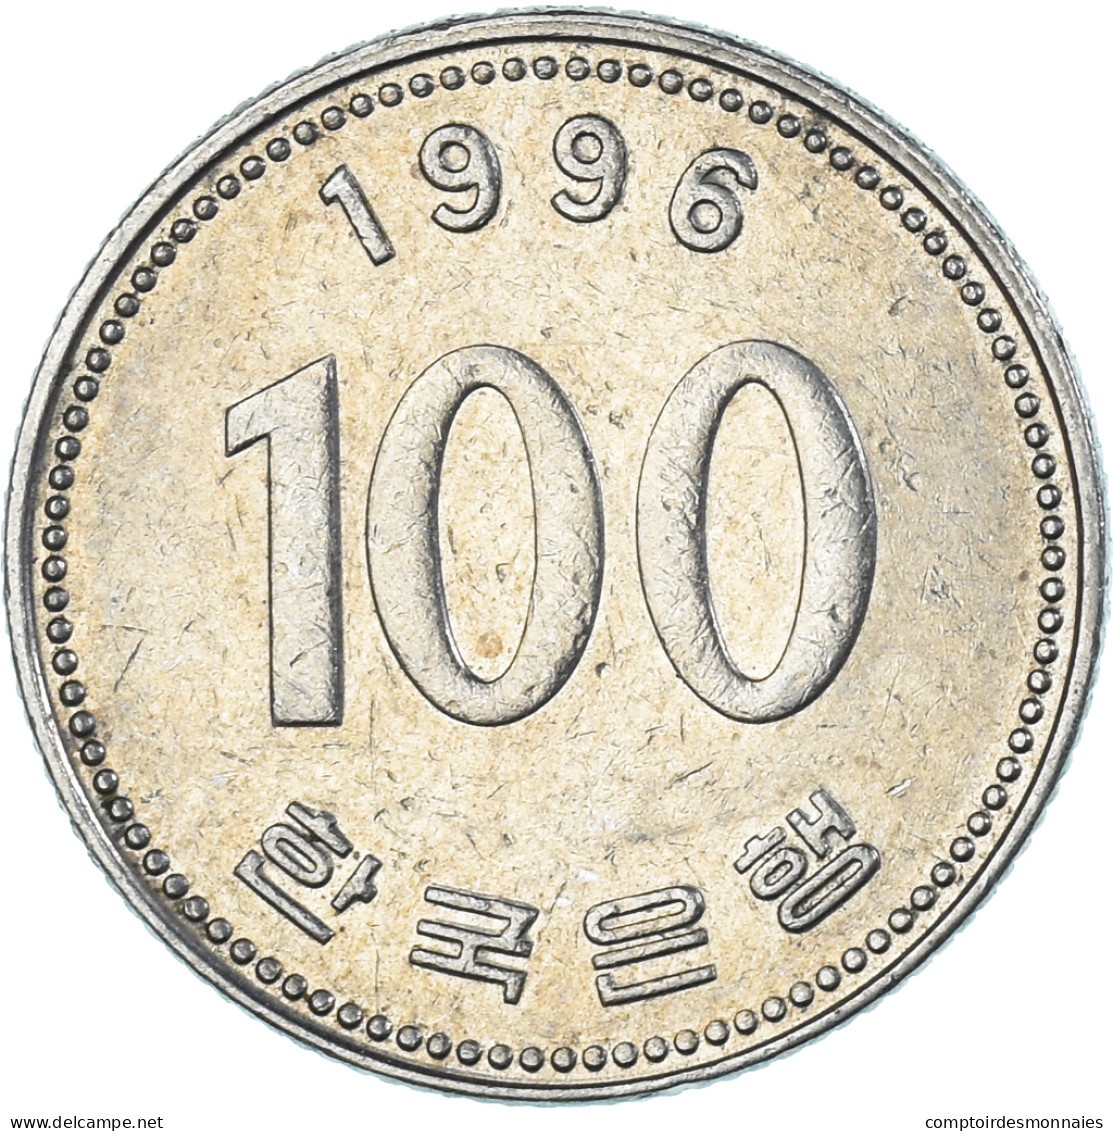 Monnaie, Corée, 100 Won, 1996 - Corée Du Sud